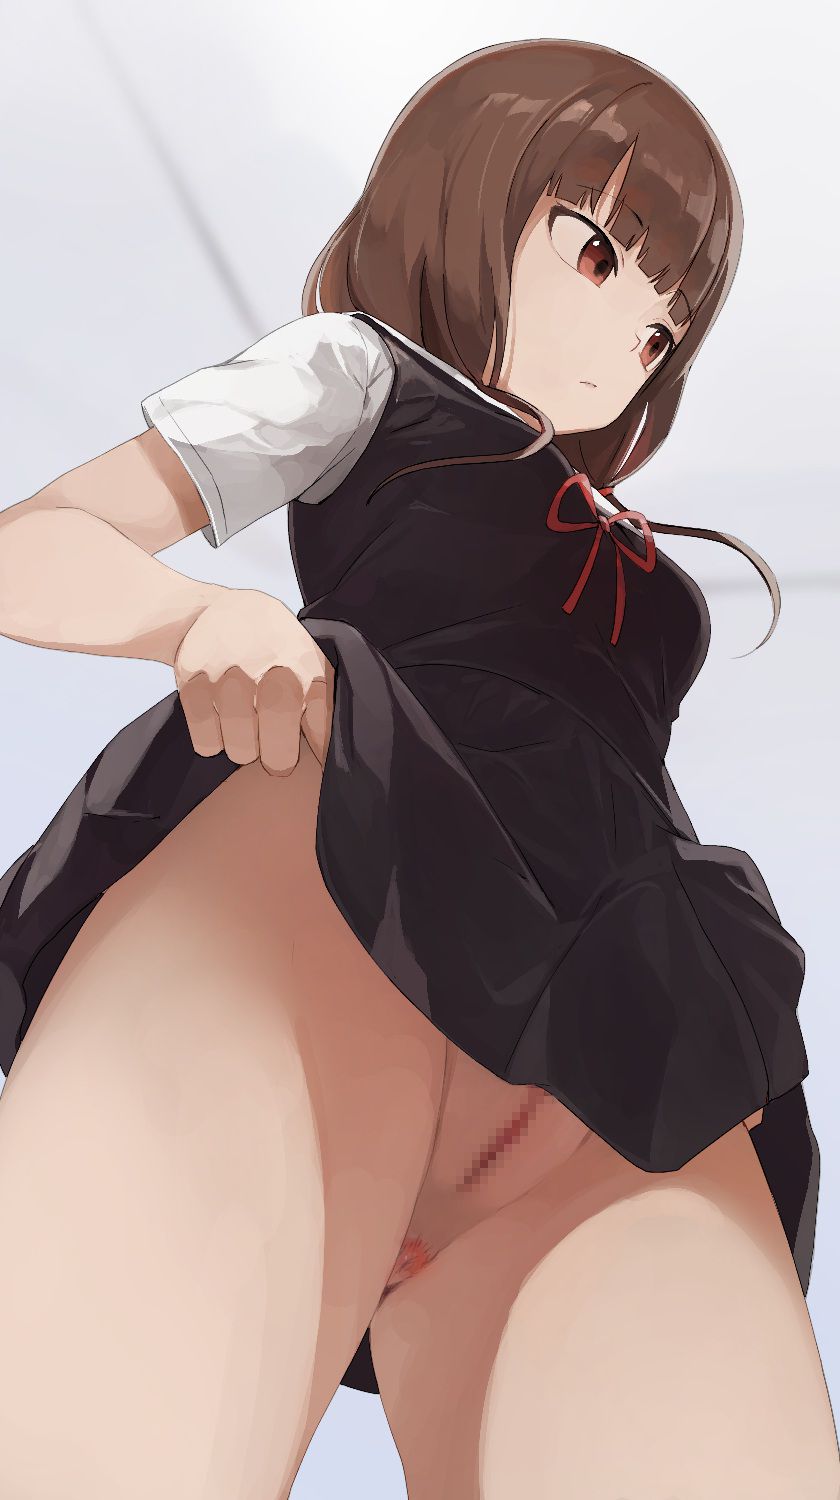 【Kaguya-sama wants to announce】 Erotic image of Miko Iino! part2 16